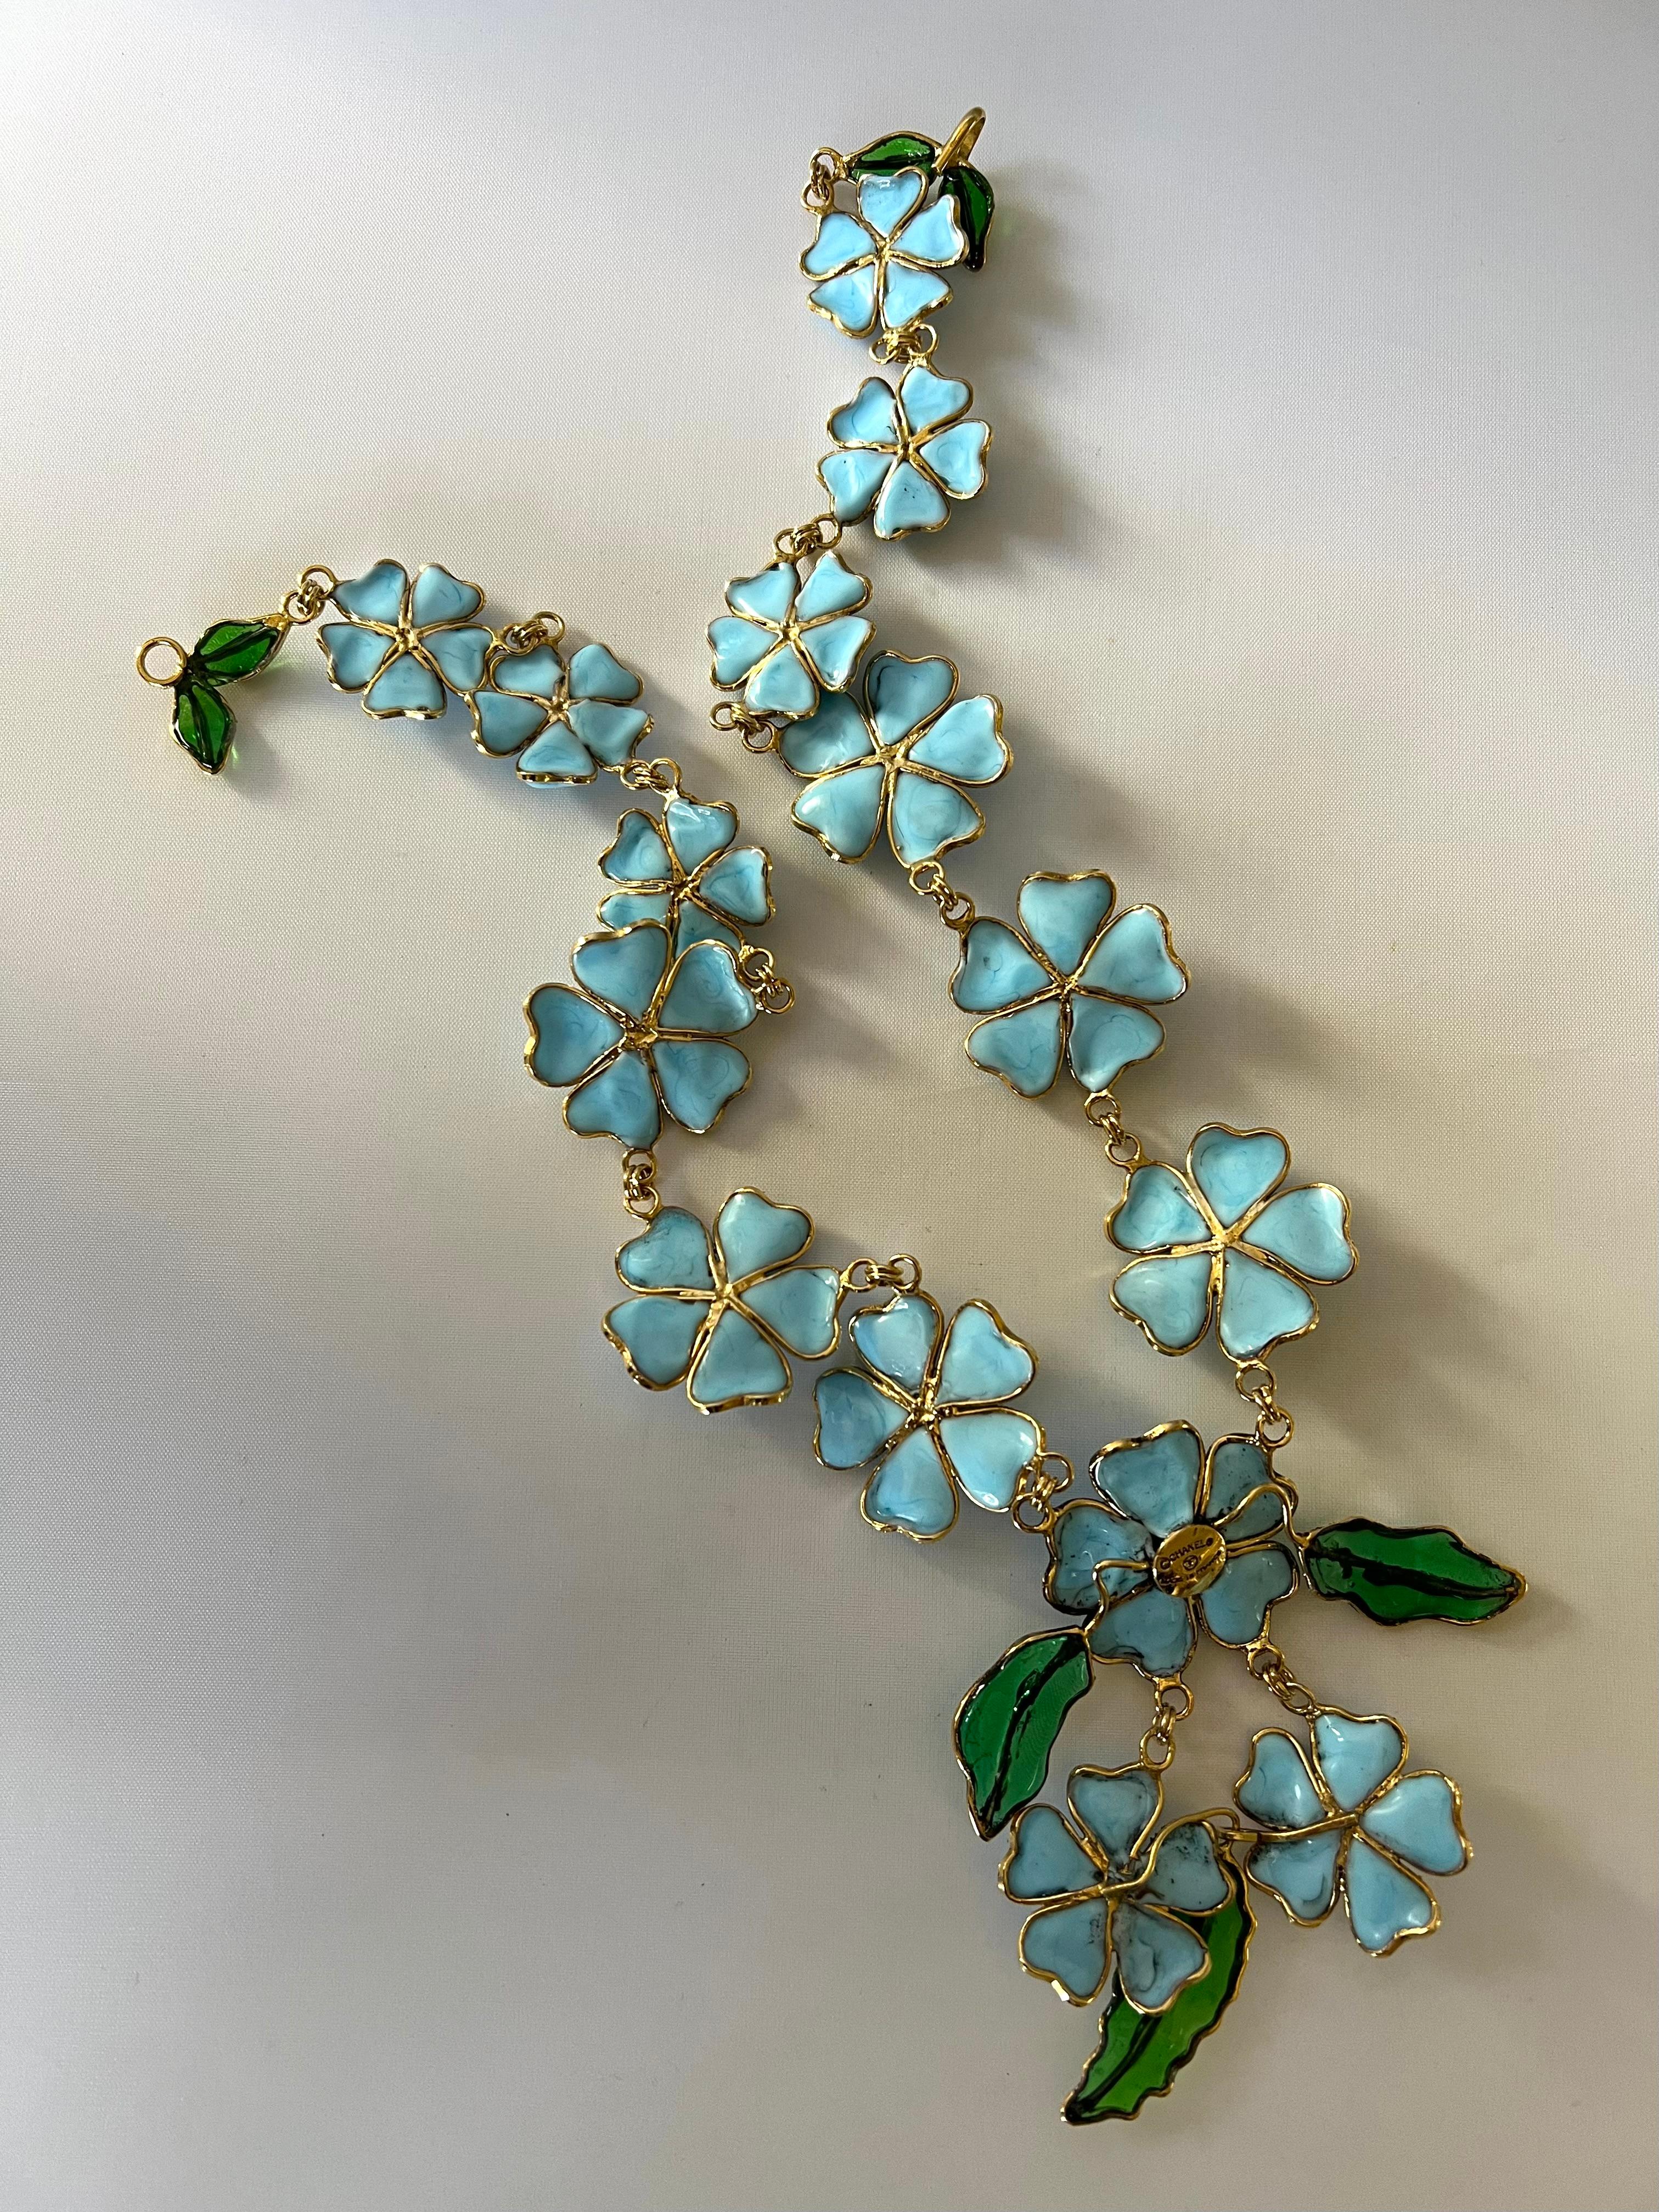 Important et rare collier vintage Coco Chanel « Camellia » en pâte de verre. Ce collier emblématique est composé de dorures en métal doré et de fleurs de camélias turquoise composées de «pate de verre », de « verre coulé » de la Maison Gripoix, qui